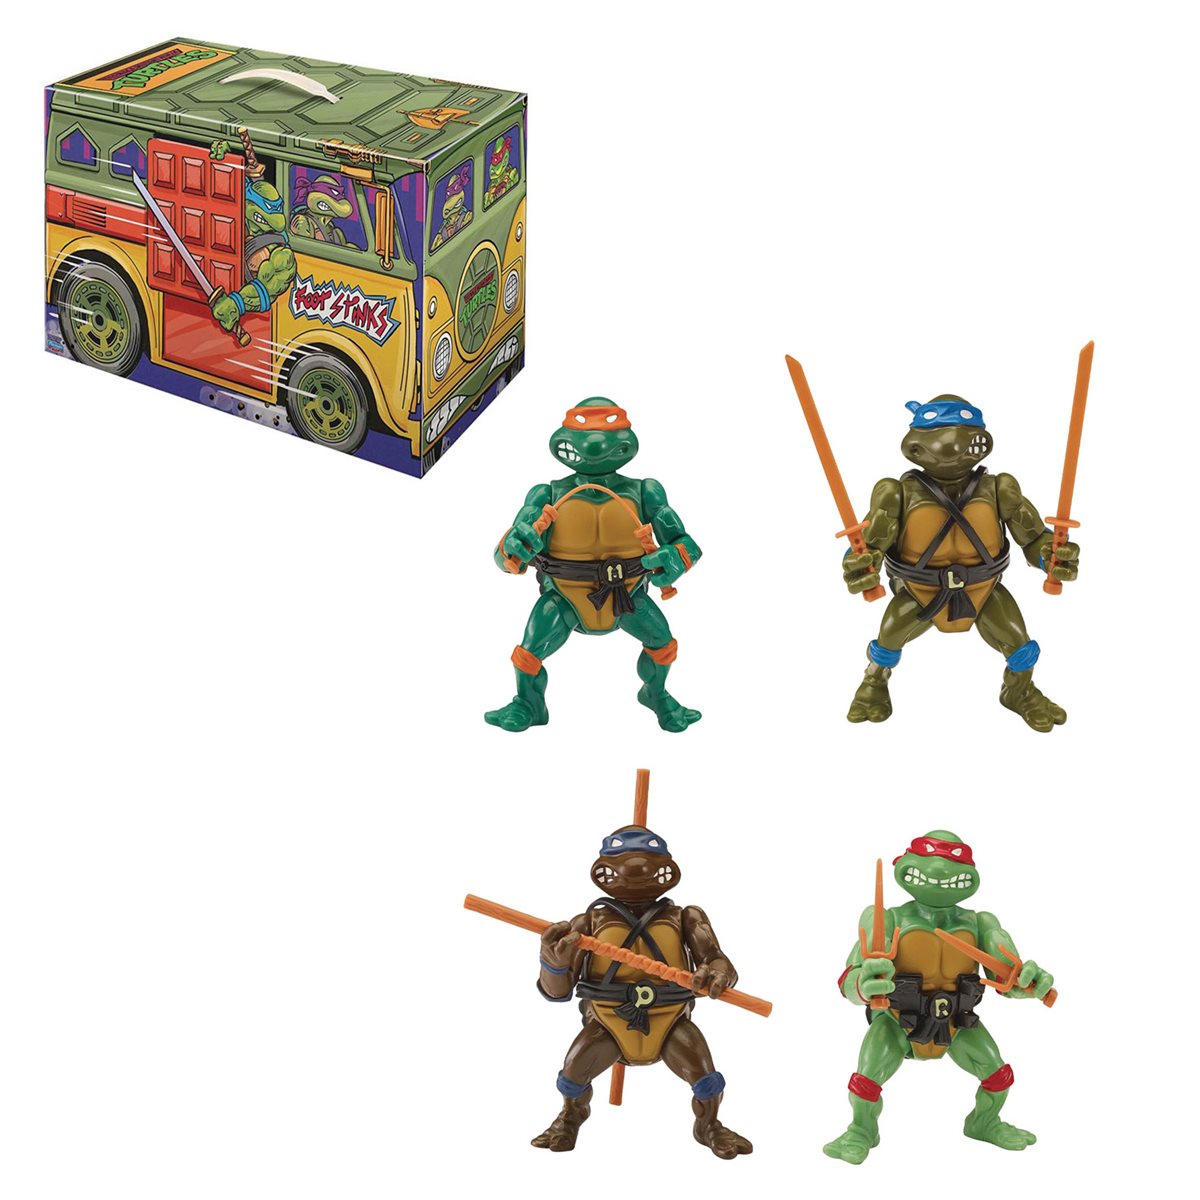 Teenage Mutant Ninja Turtles Movie Set of 6 Action Figures Toys Ninja Figures 